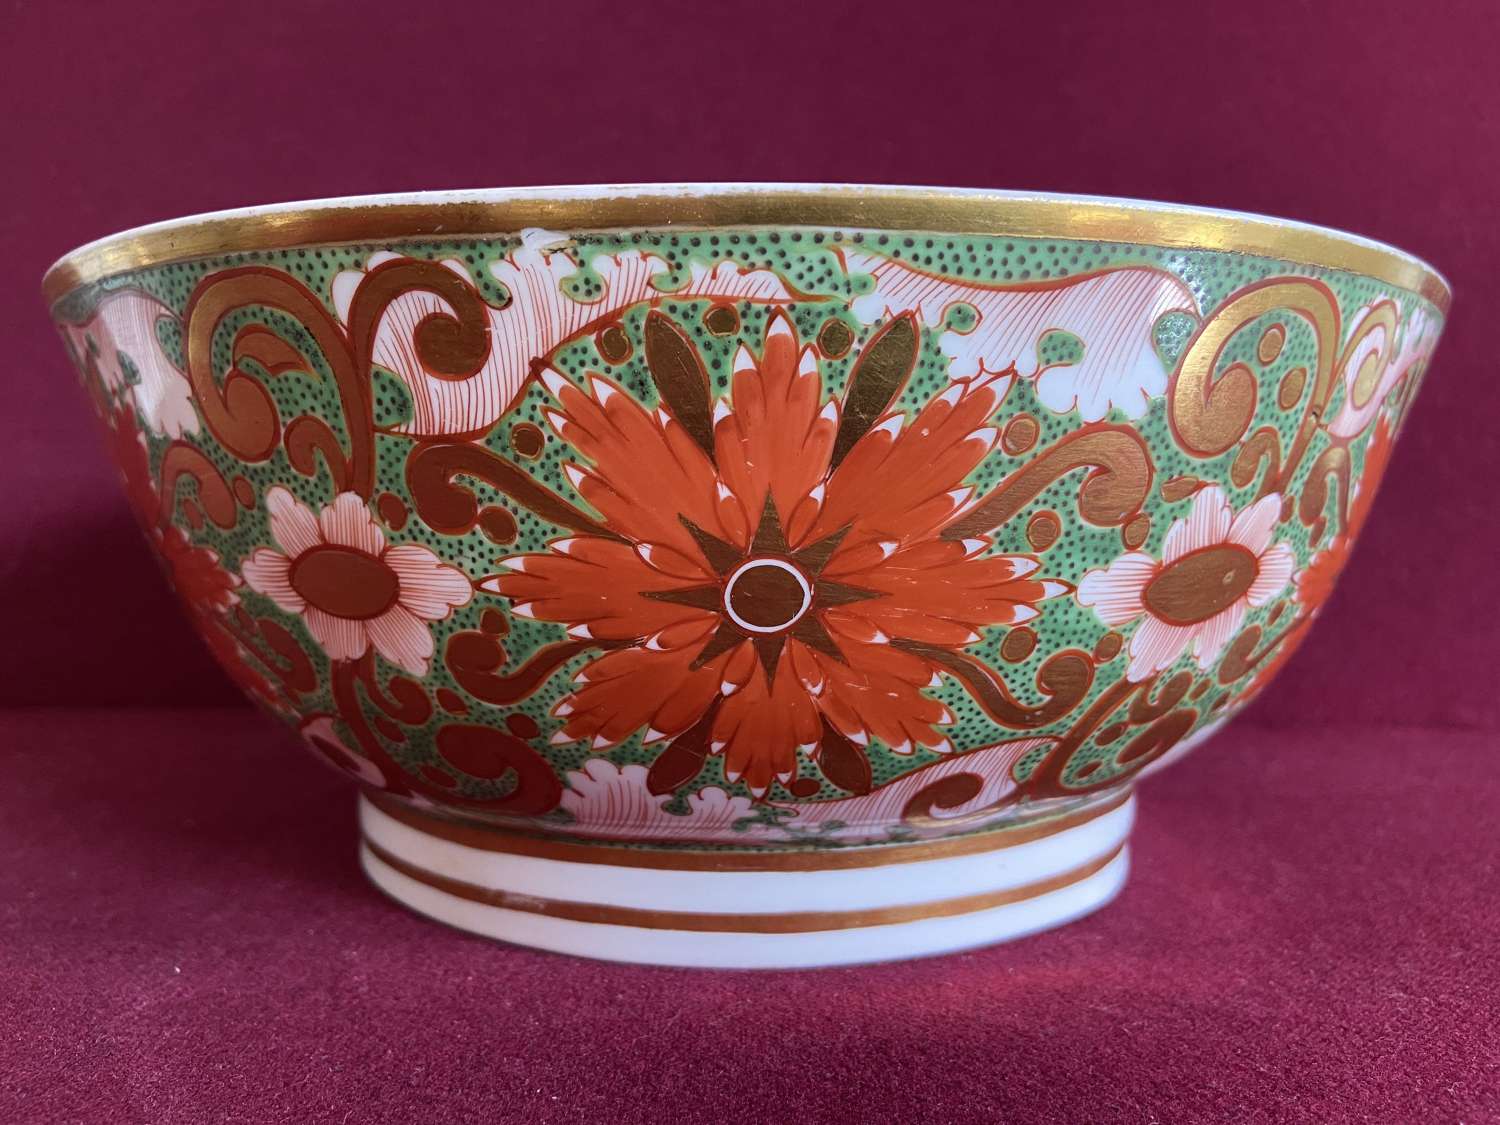 A Minton porcelain punch bowl c.1805-1810